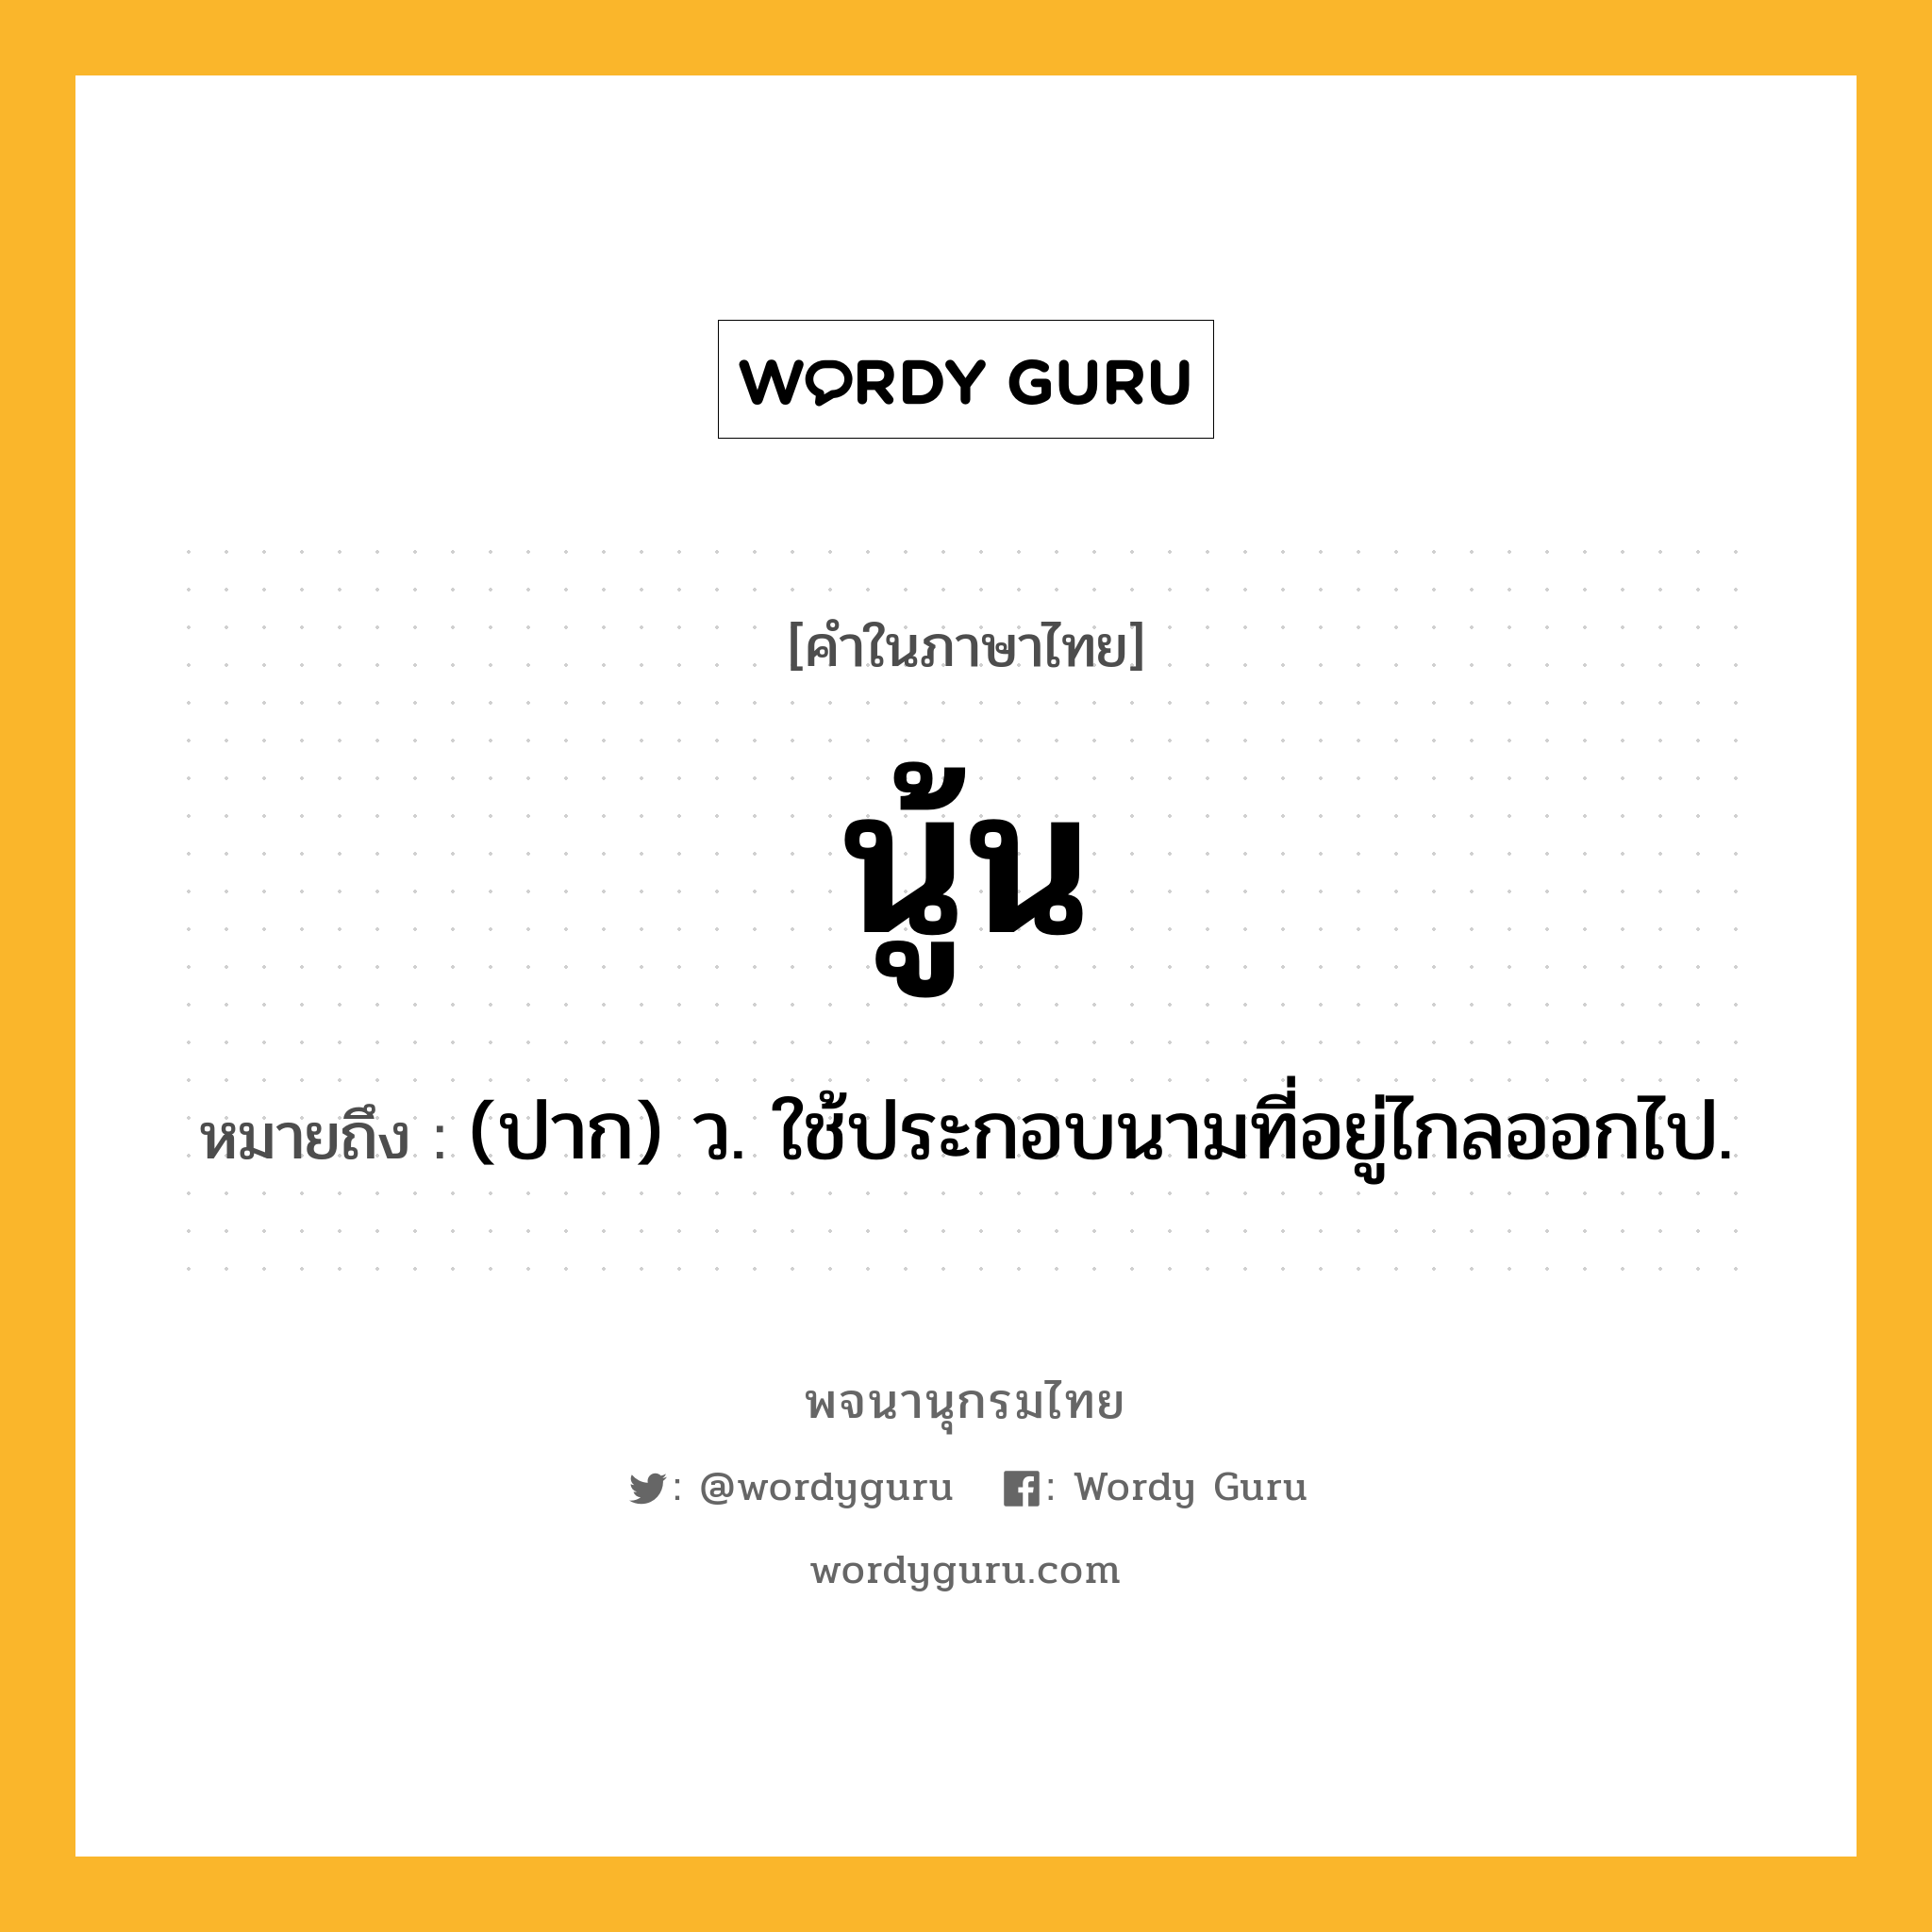 นู้น หมายถึงอะไร?, คำในภาษาไทย นู้น หมายถึง (ปาก) ว. ใช้ประกอบนามที่อยู่ไกลออกไป.